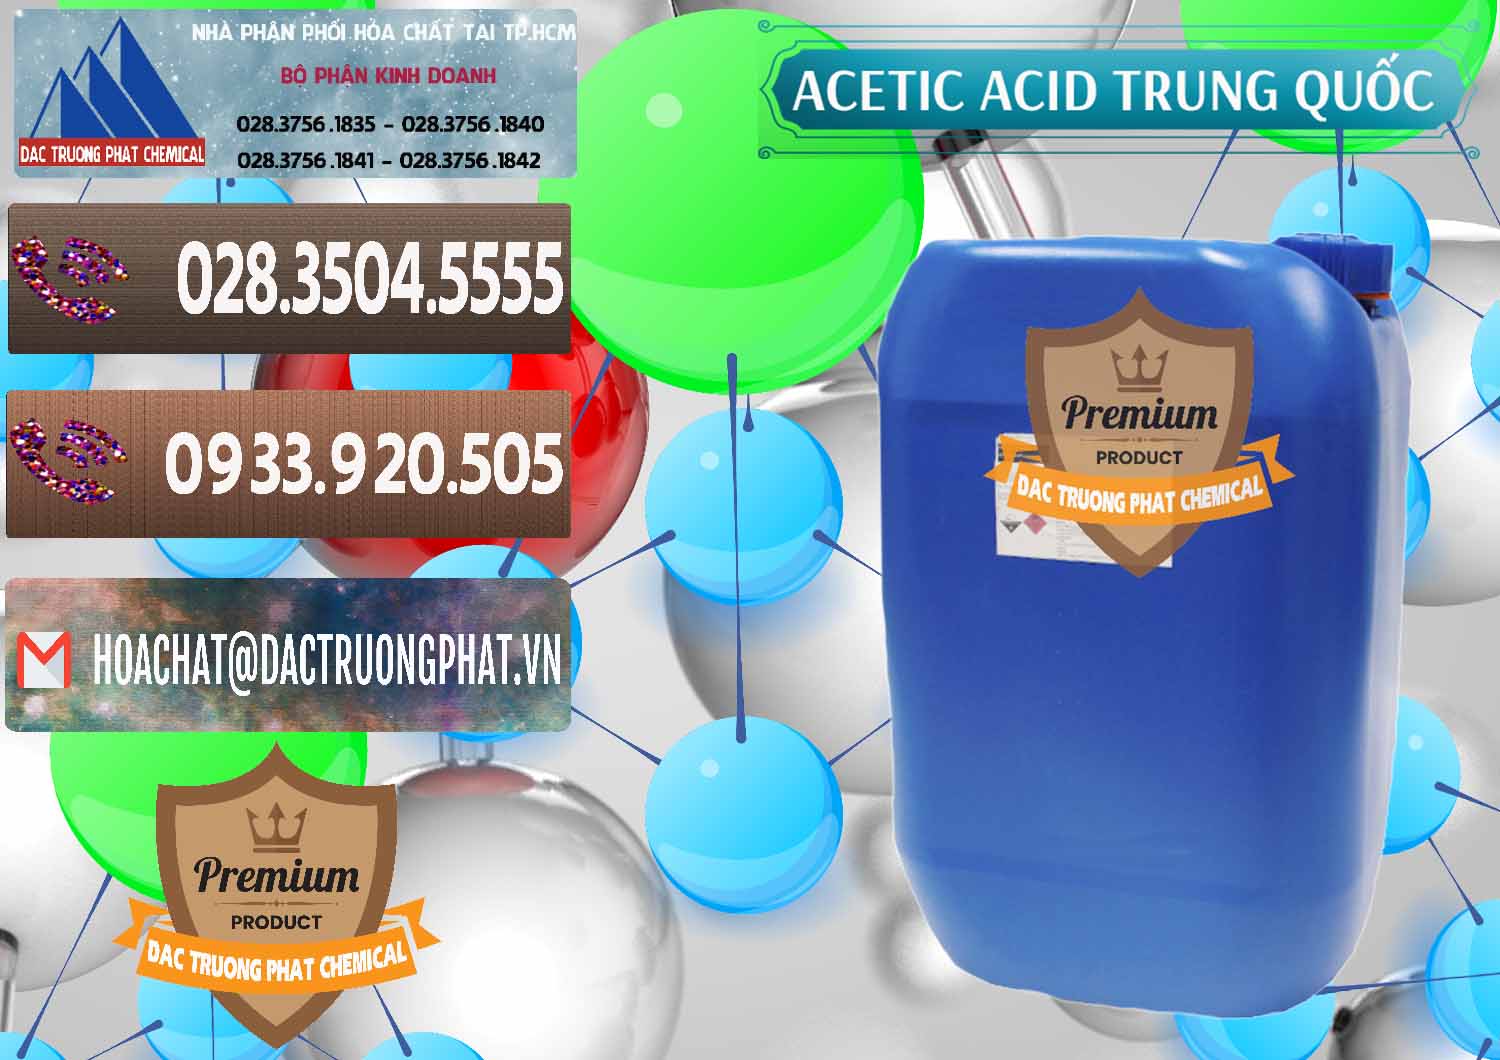 Nơi chuyên bán - cung ứng Acetic Acid – Axit Acetic Trung Quốc China - 0358 - Cty phân phối _ cung cấp hóa chất tại TP.HCM - hoachatviet.net